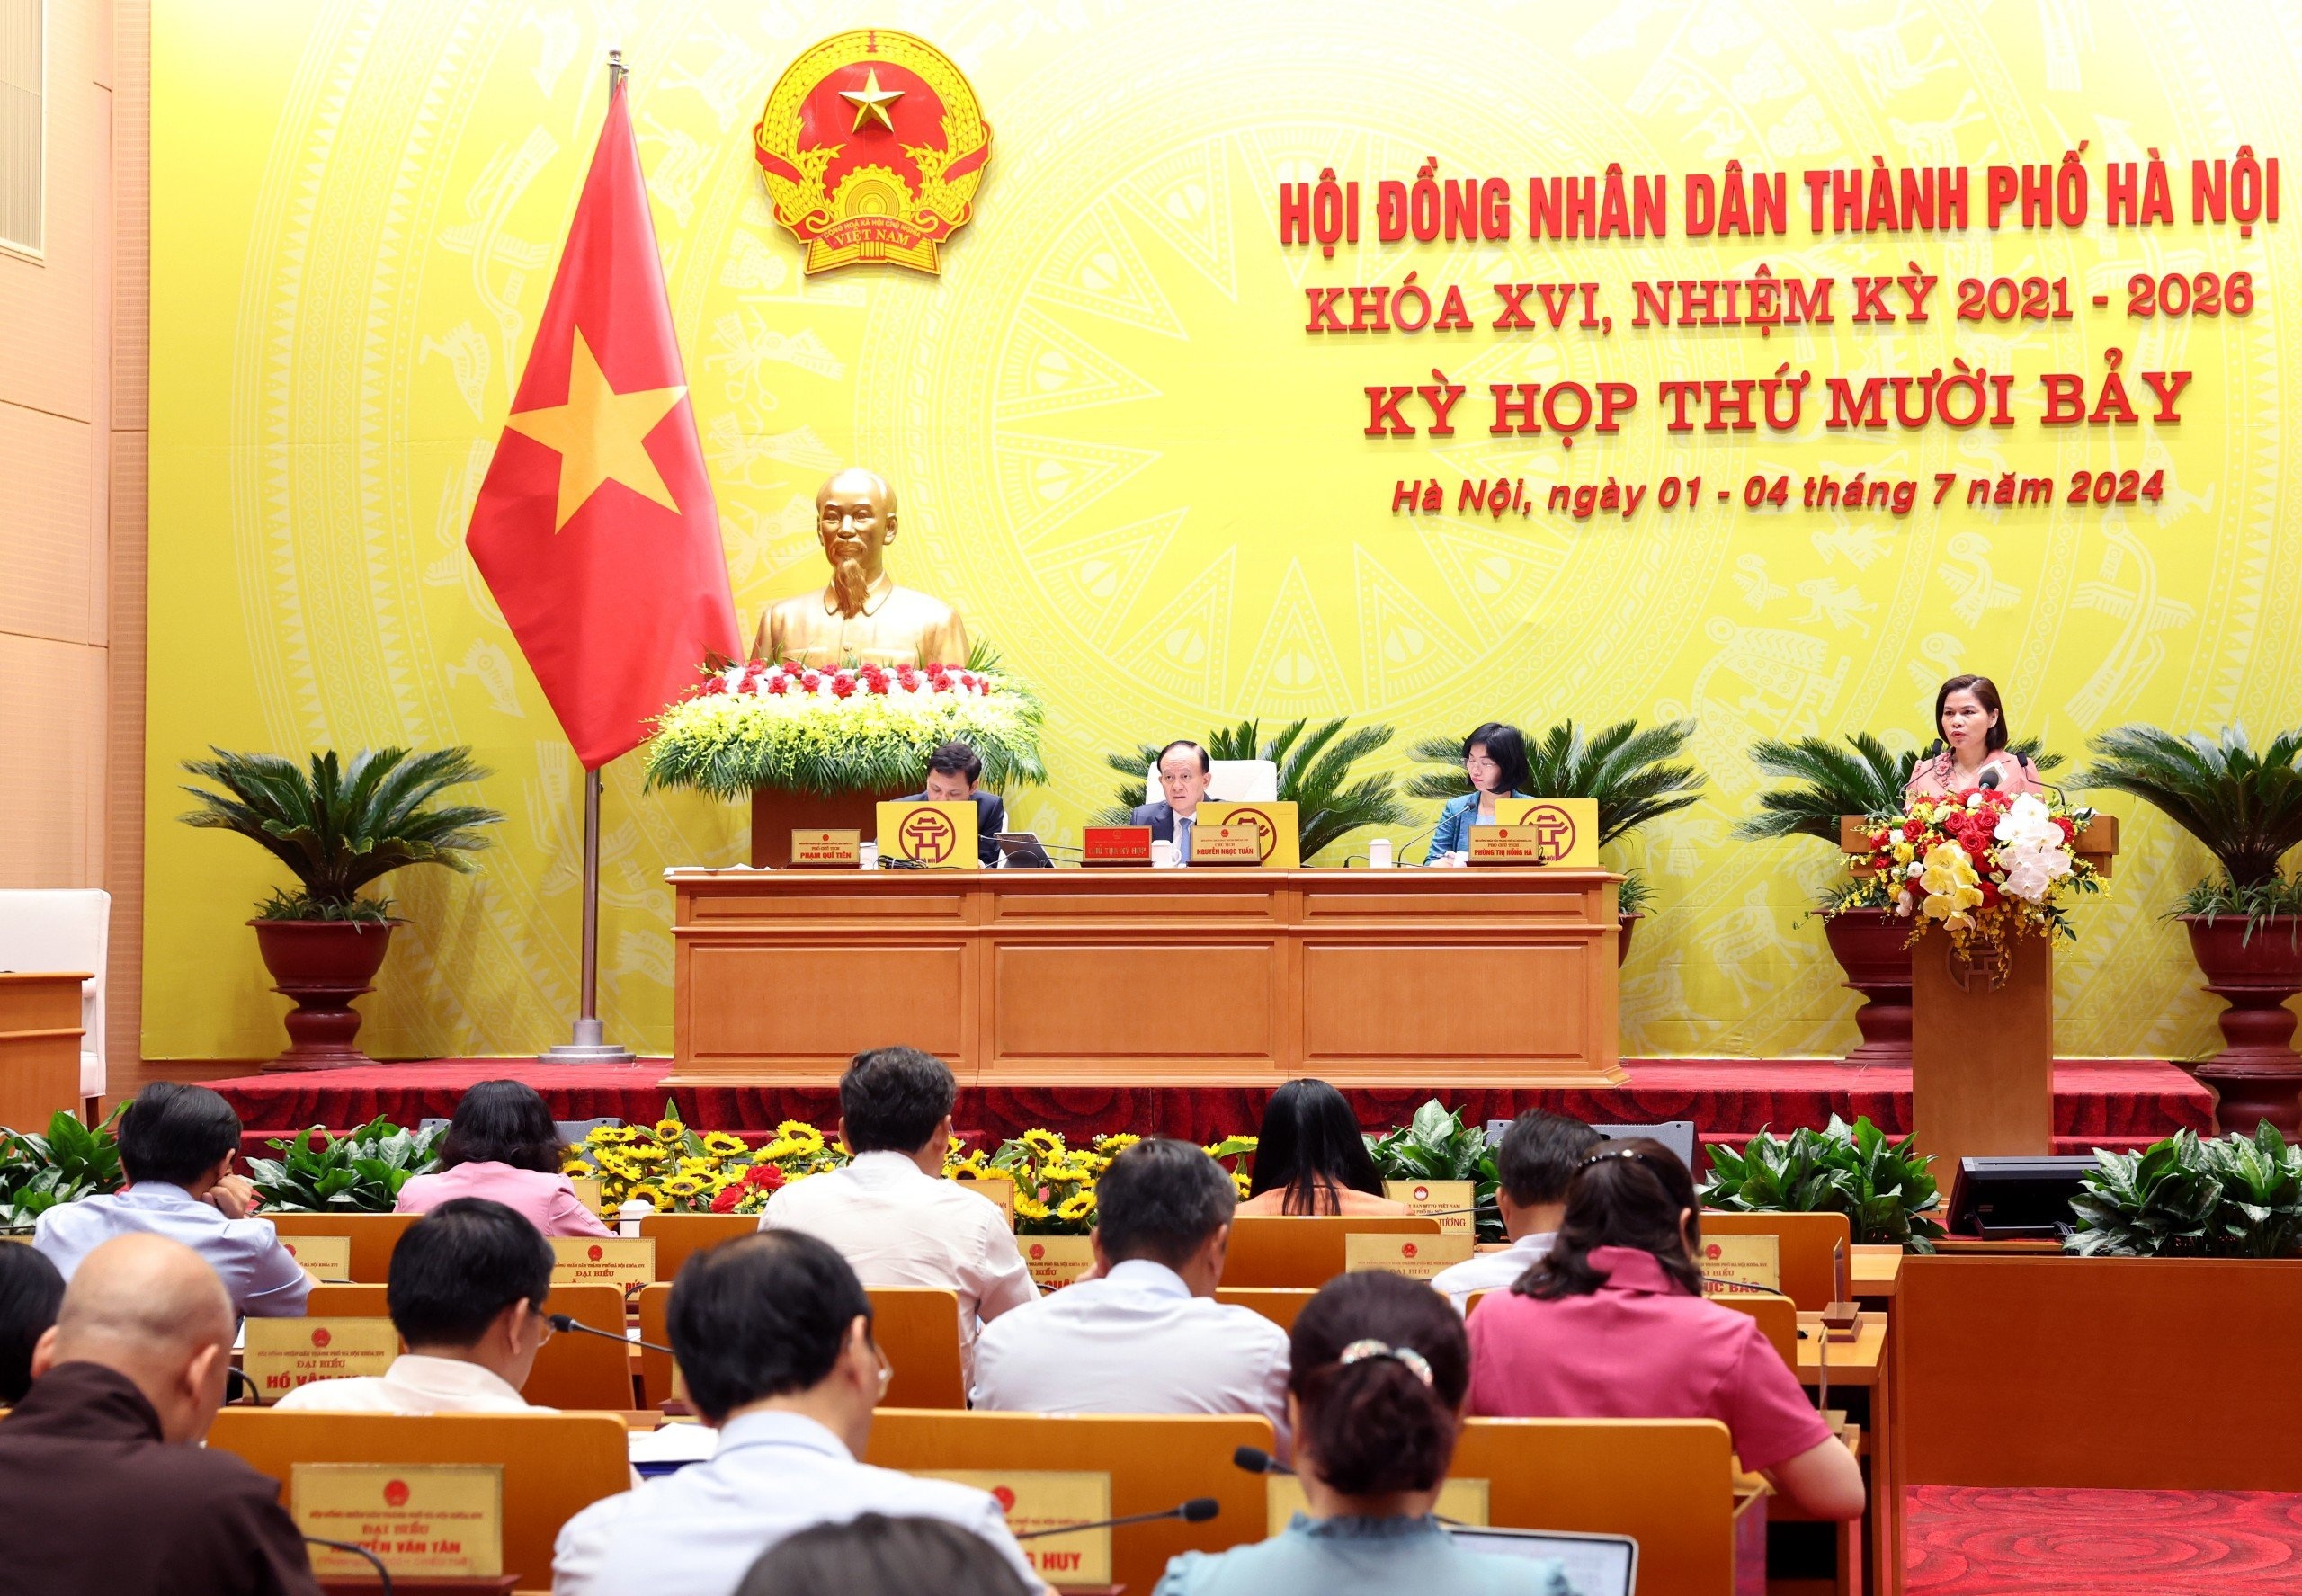 Hà Nội đặt 11 nhiệm vụ trọng tâm phát triển kinh tế - xã hội